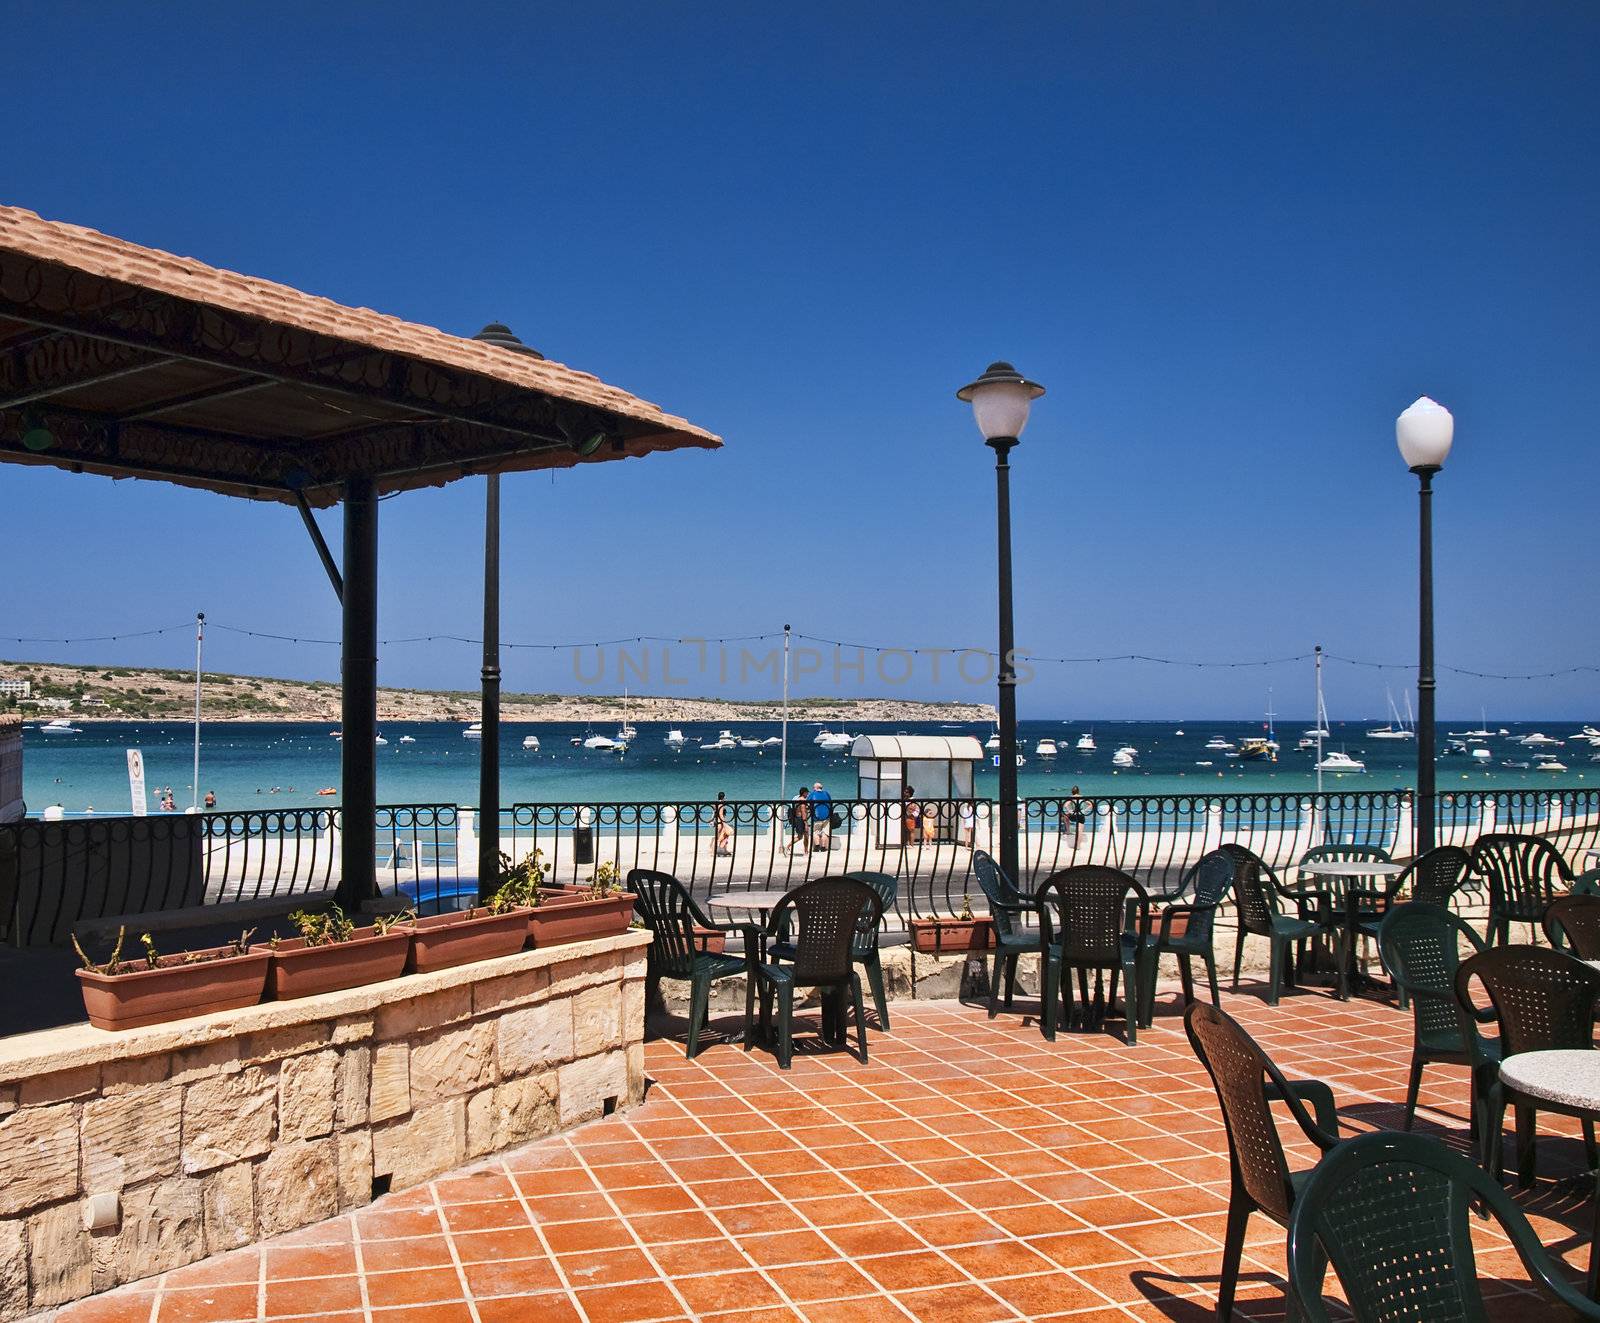 Mediterranean Resort by PhotoWorks